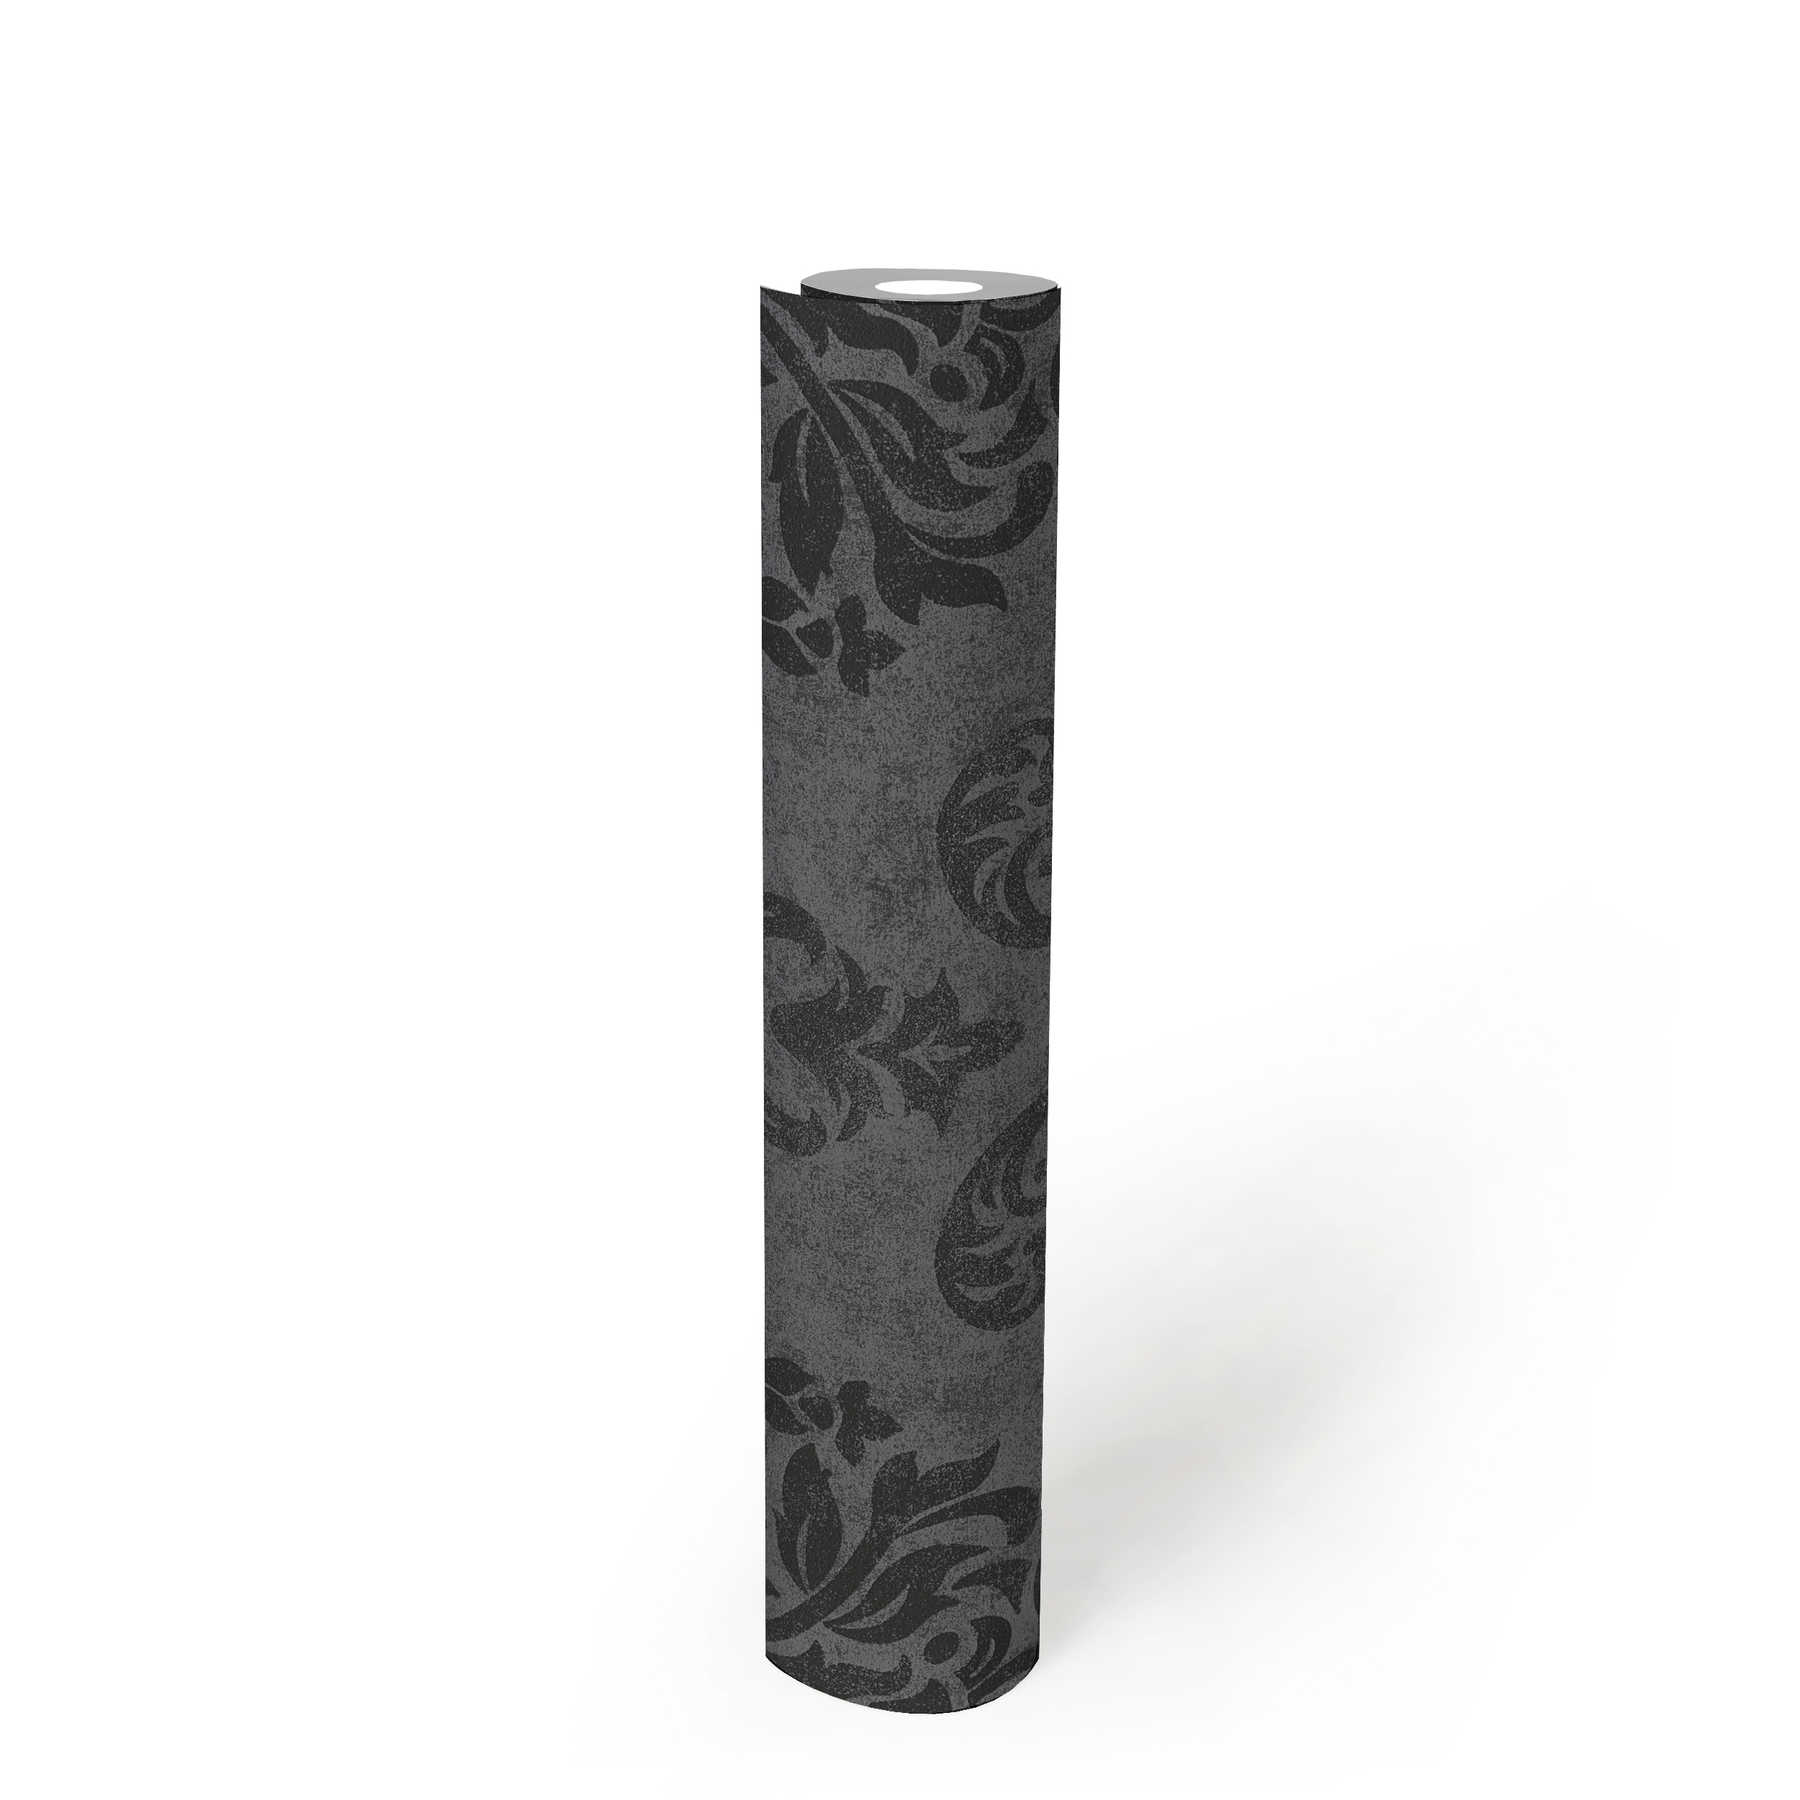             Ornements papier peint style baroque avec effet scintillant - gris, métallique, noir
        